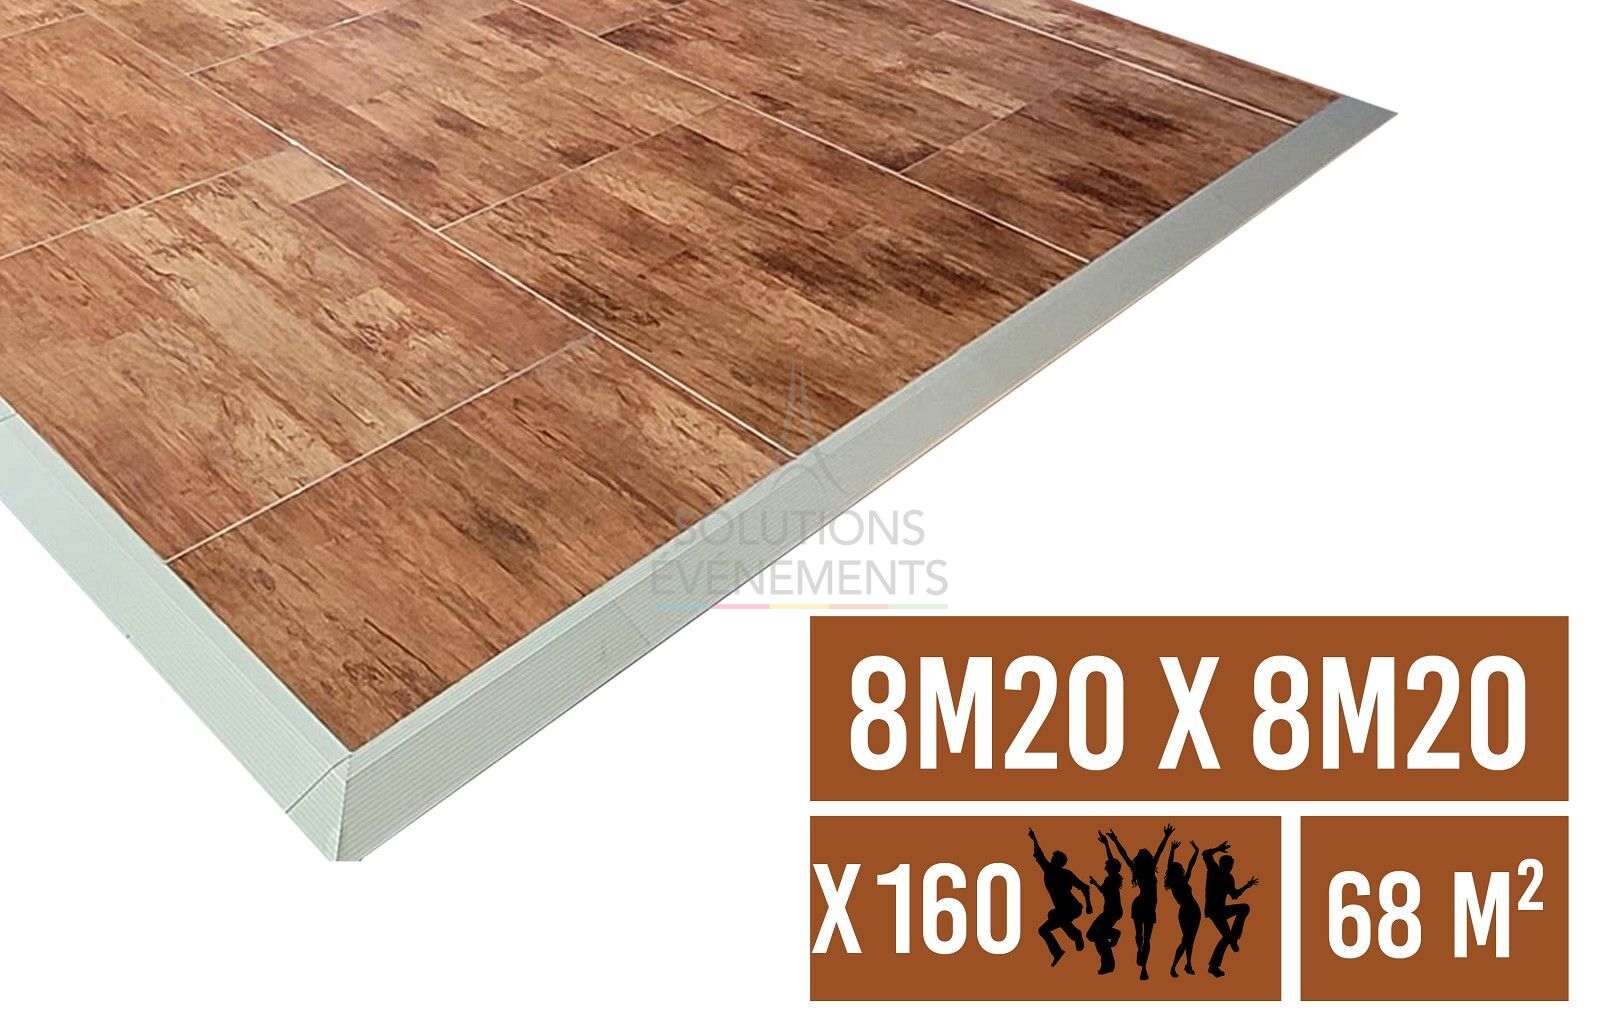 Rental of ballroom floor and parquet floor of 8.20 x 8.20 m